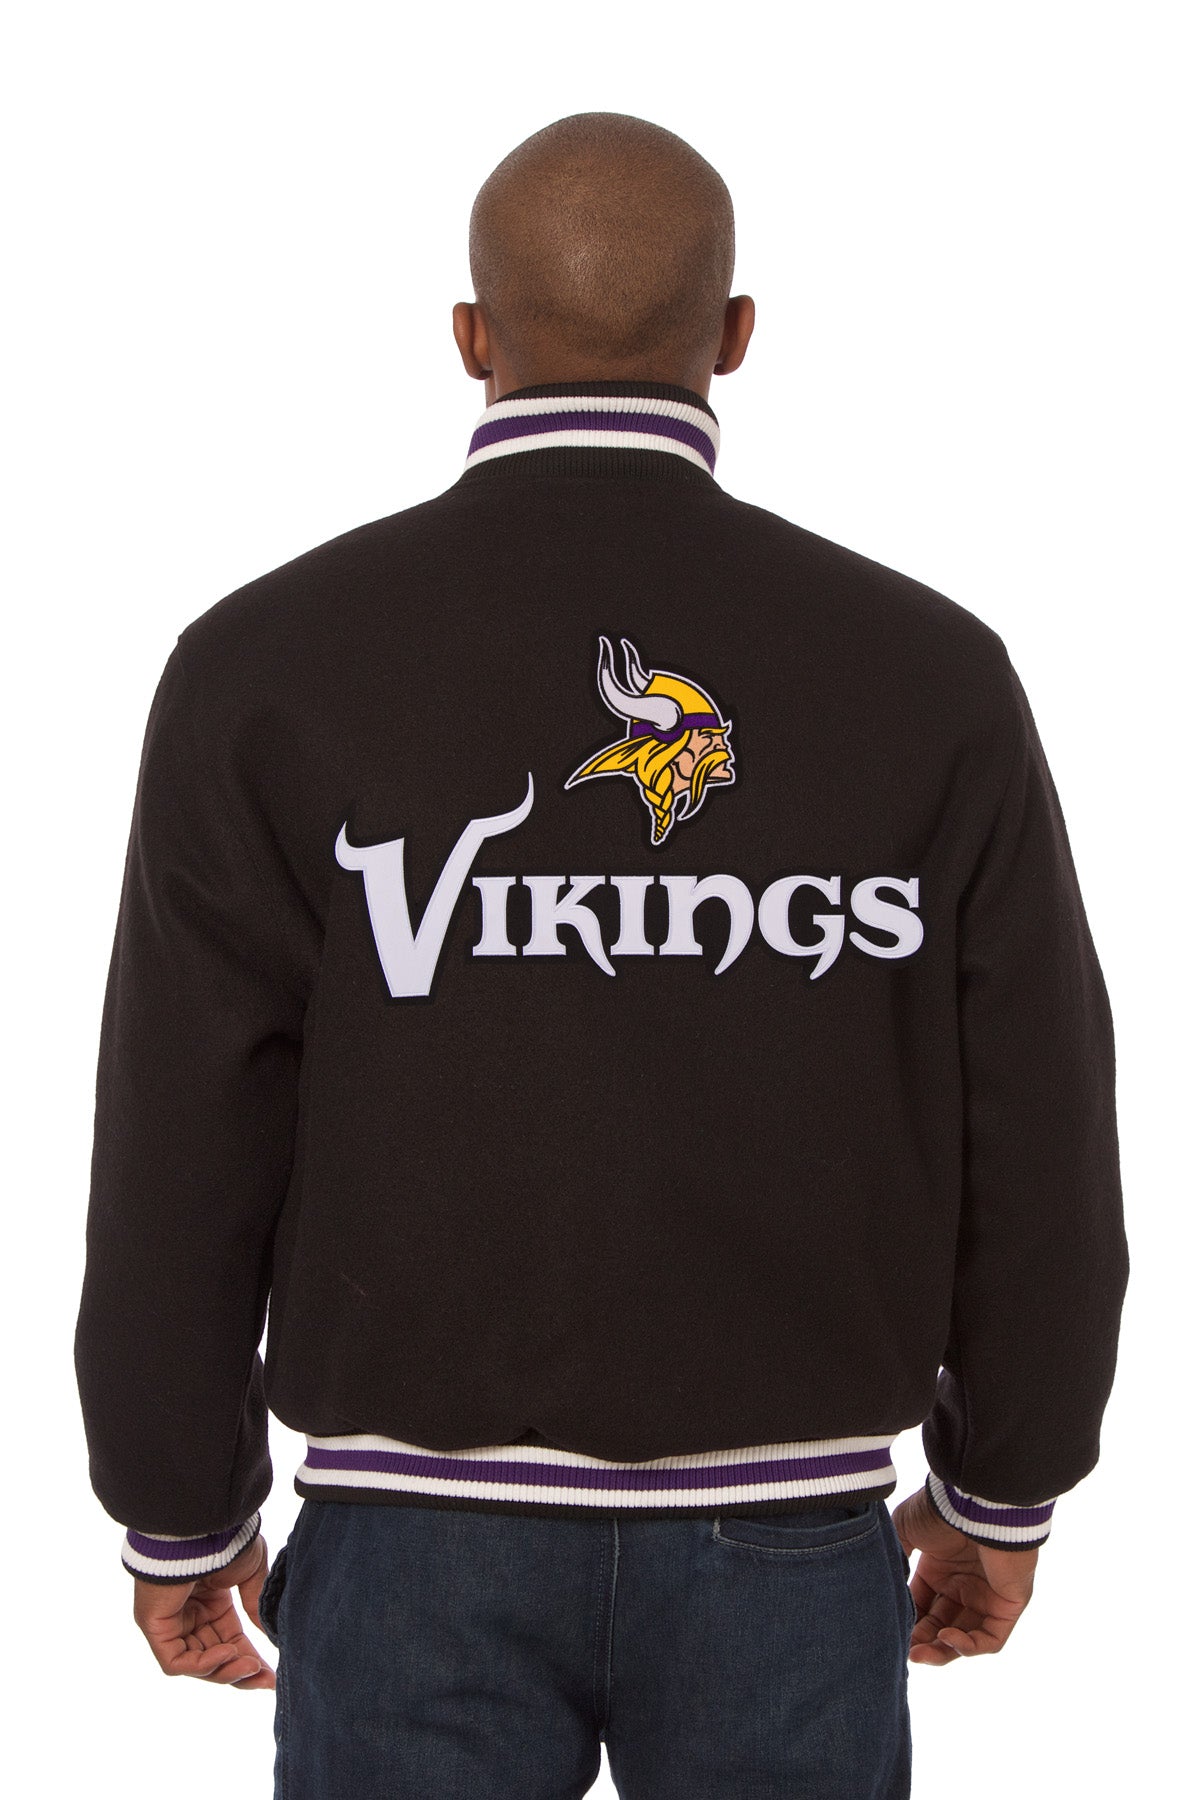 Minnesota Vikings Embroidered Wool Jacket